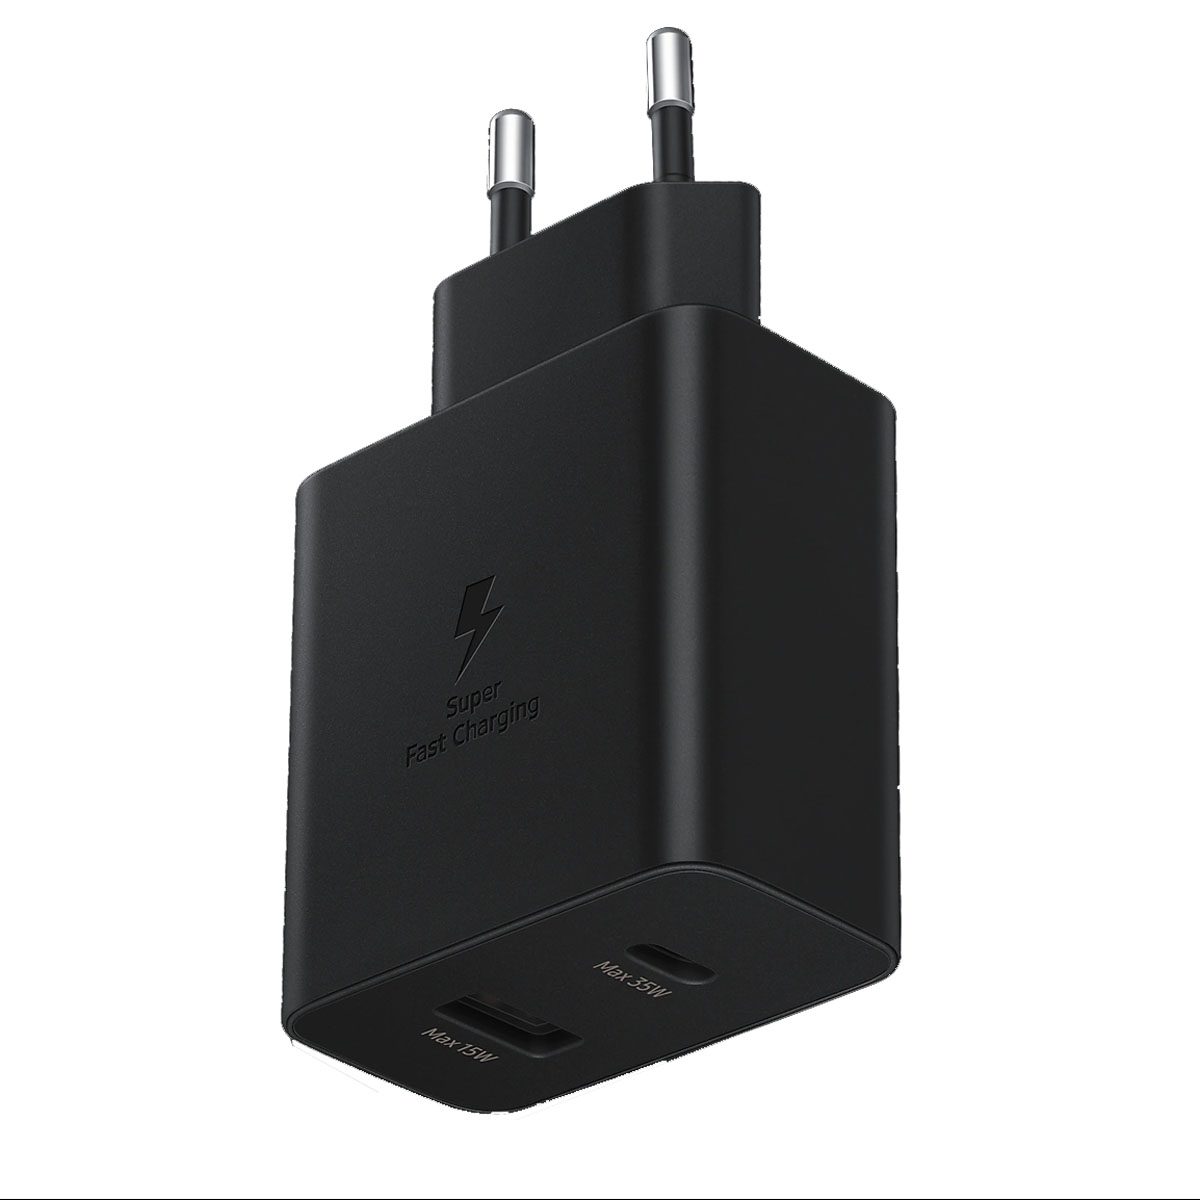 СЗУ (Сетевое зарядное устройство) EP-TA220, 35W, 1 USB Type C, 1 USB, цвет черный